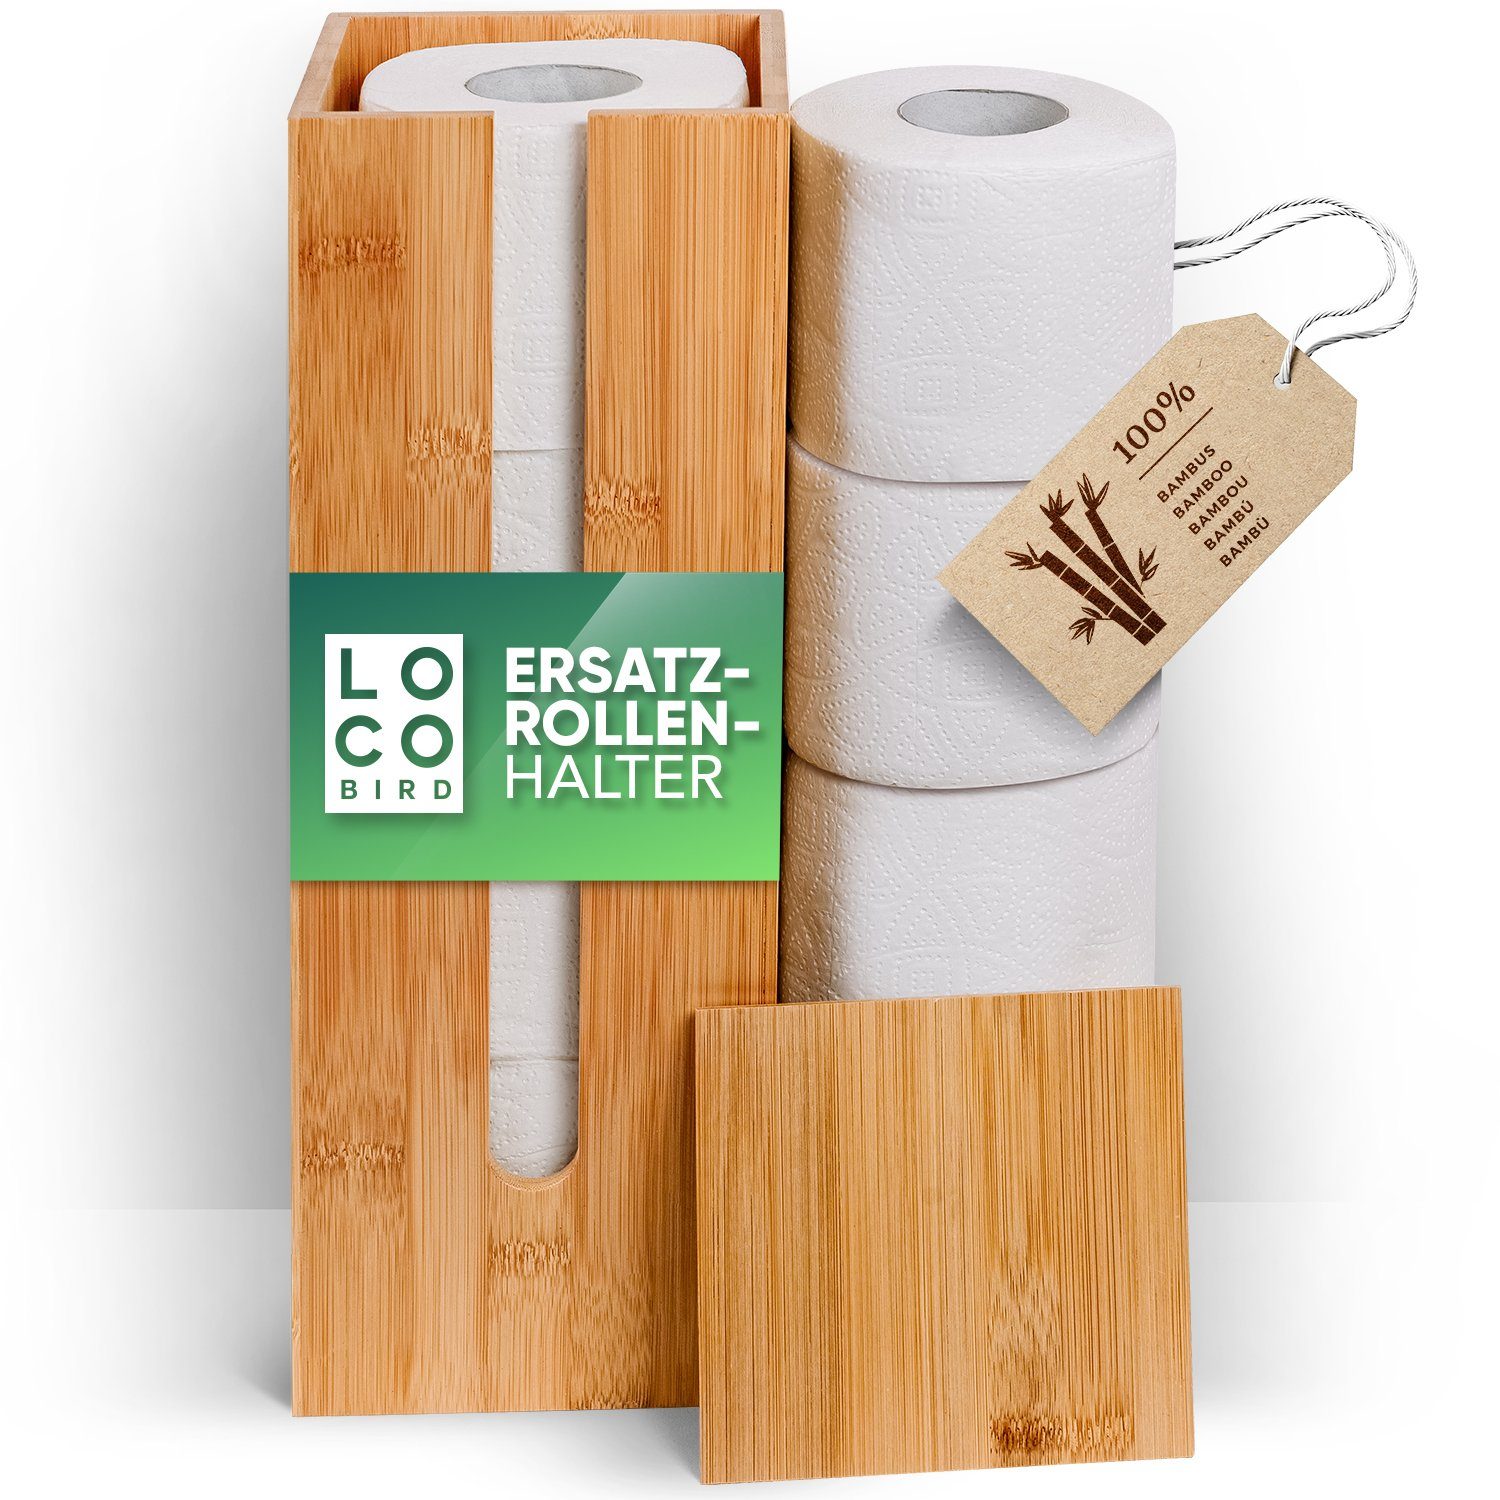 Loco Bird Toiletten-Ersatzrollenhalter Toilettenpapier Aufbewahrung für4  Rollen aus Bambus, Klopapier Aufbewahrung, Ersatzrollenhalter  Toilettenpapier, Toilettenpapierhalter stehend, Klopapierhalter stehend,  Klorollenhalter stehend, Klorollenaufbewahrung